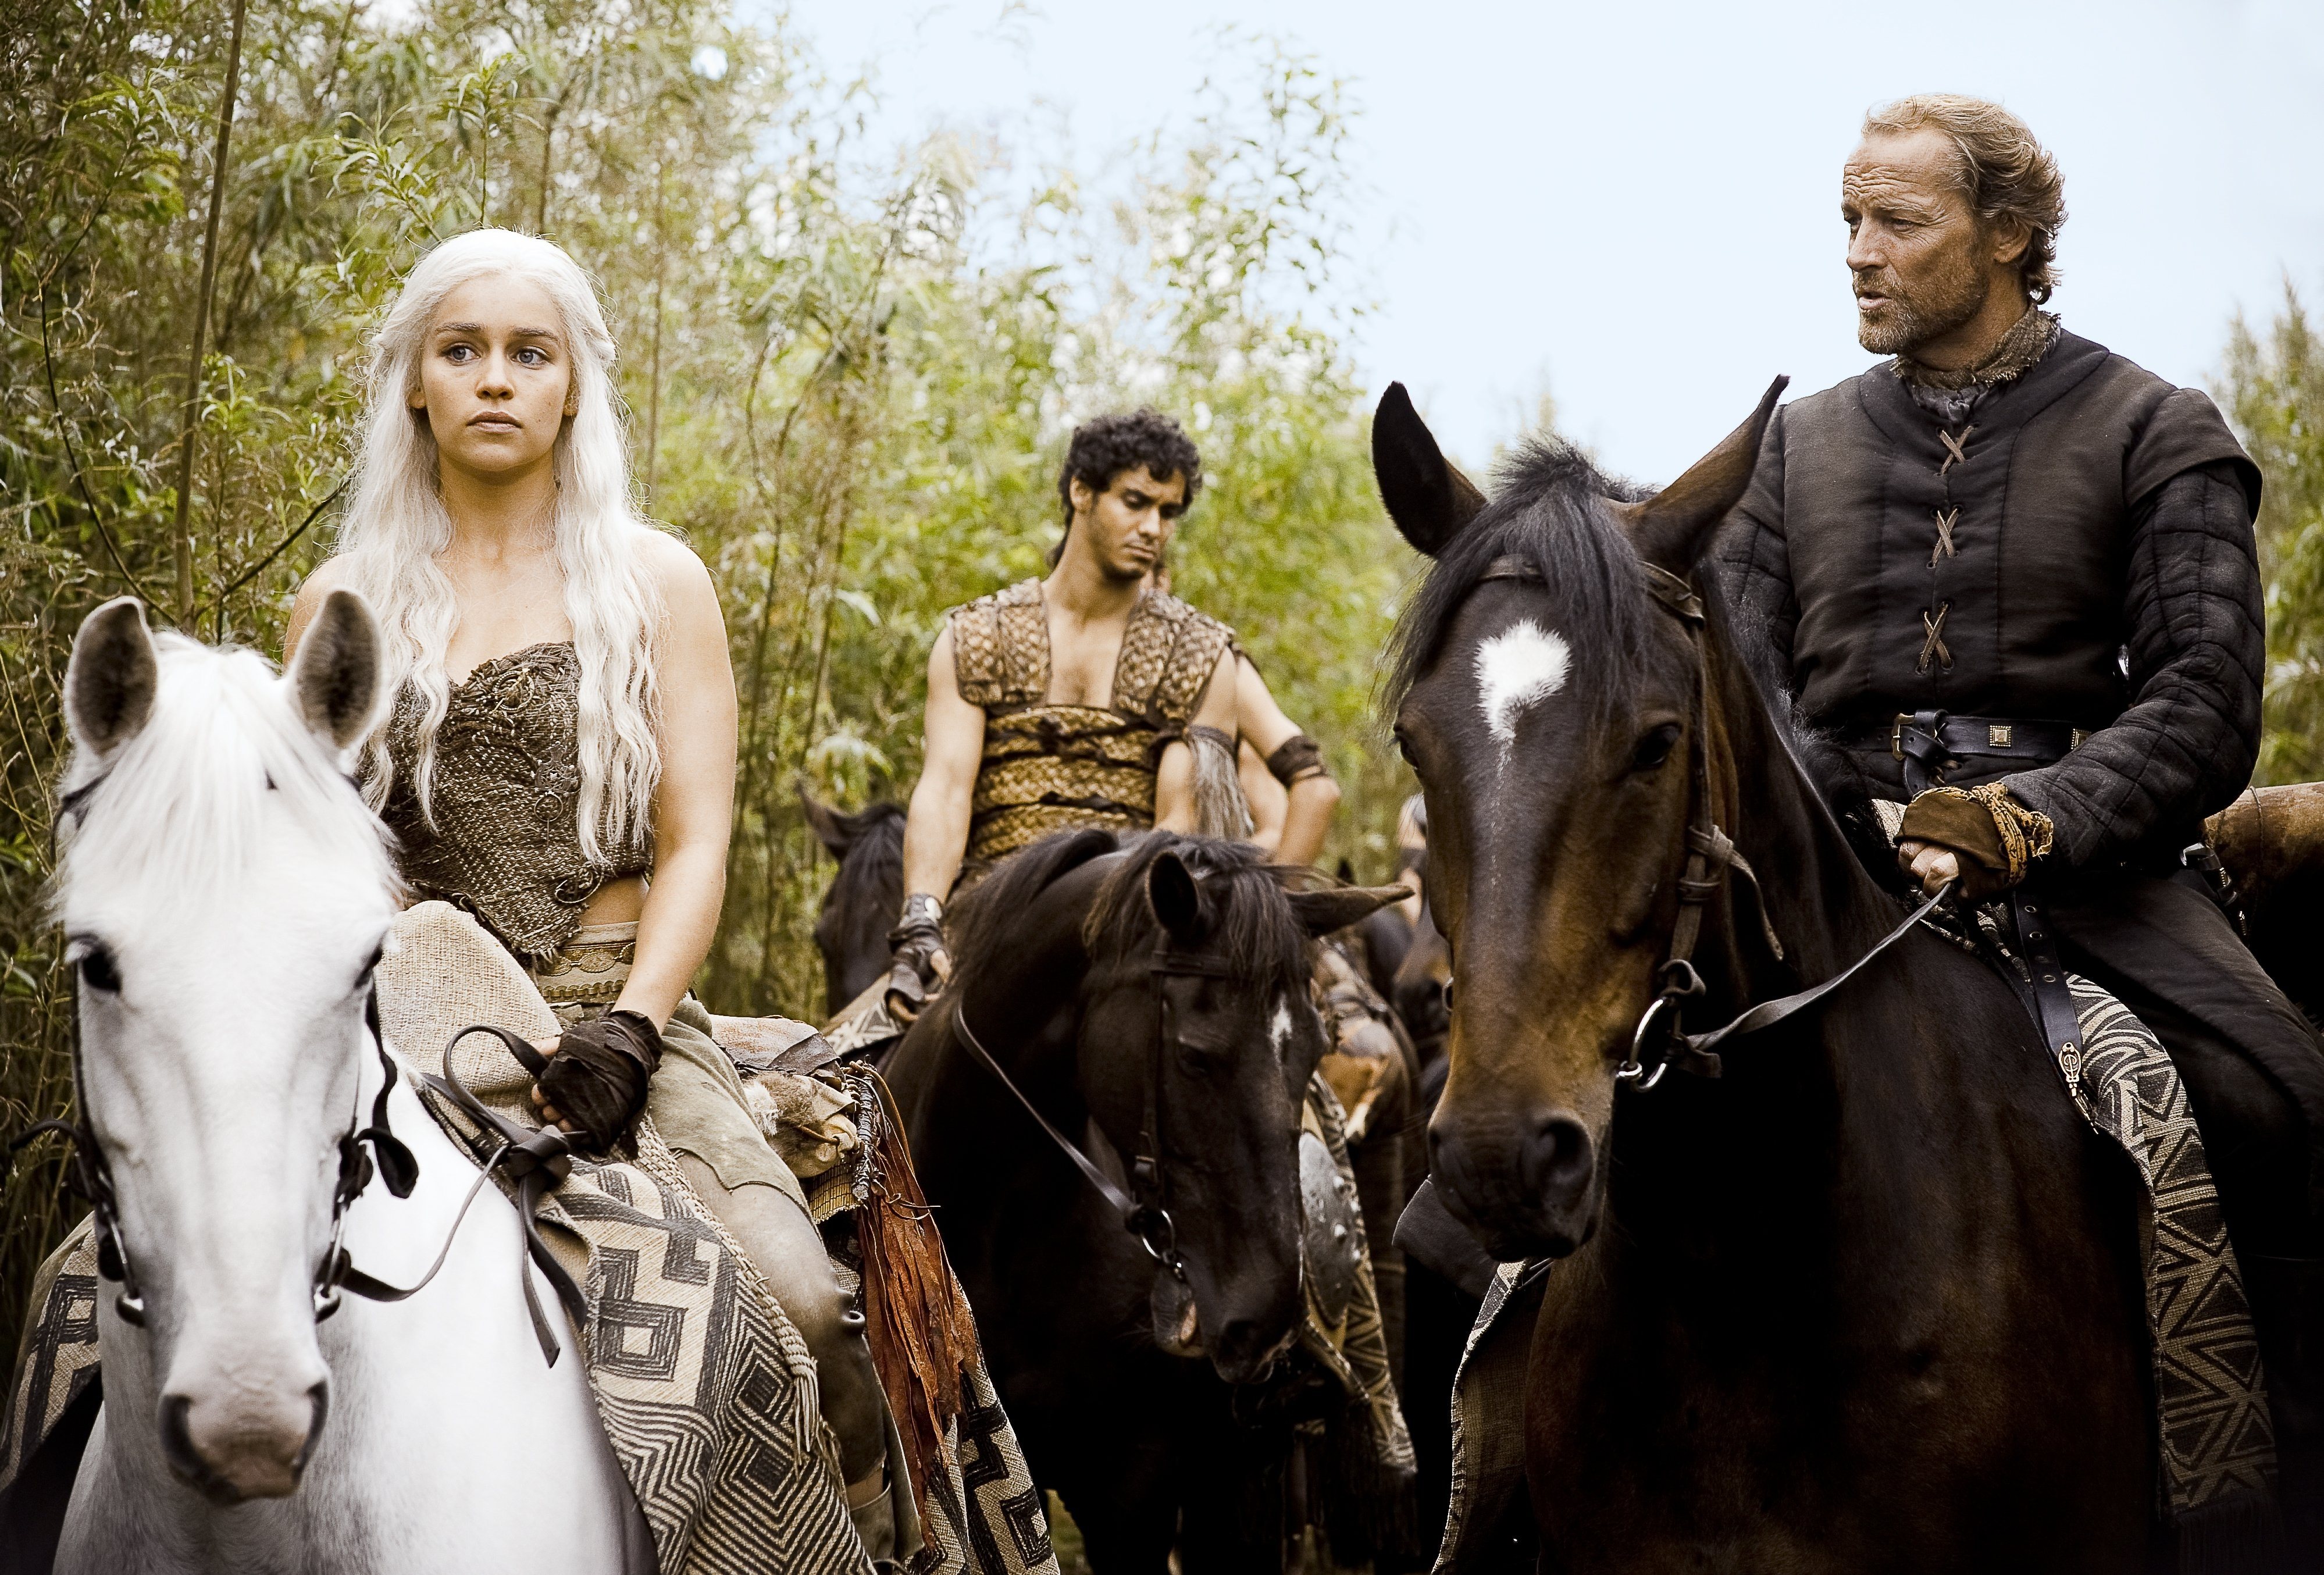 Free download wallpaper Game Of Thrones, Tv Show, Daenerys Targaryen, Jorah Mormont on your PC desktop